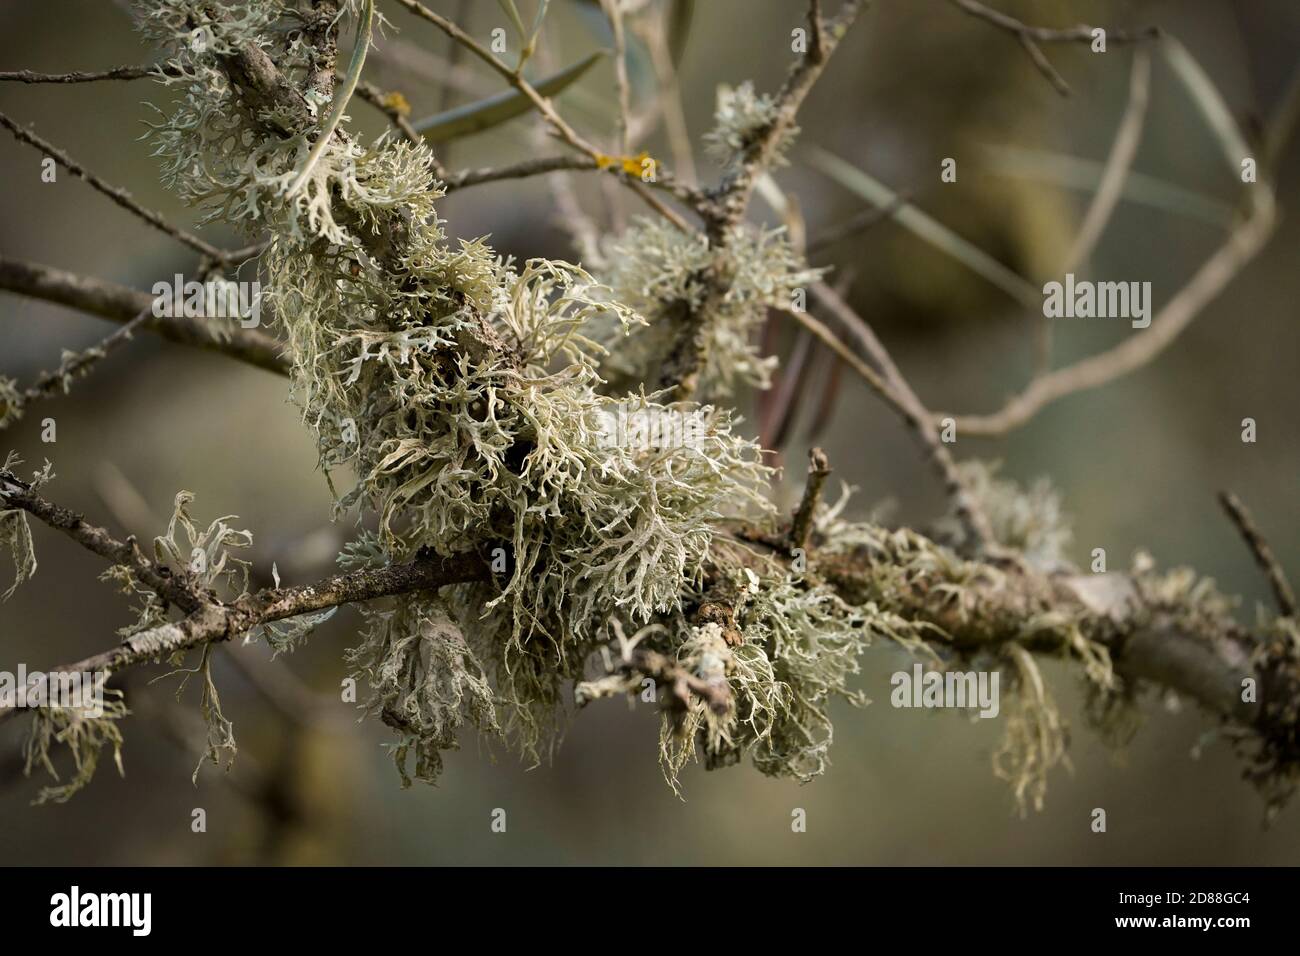 Blattflechte sp.Leben auf einem Zweig, Andalusien, Spanien. Stockfoto